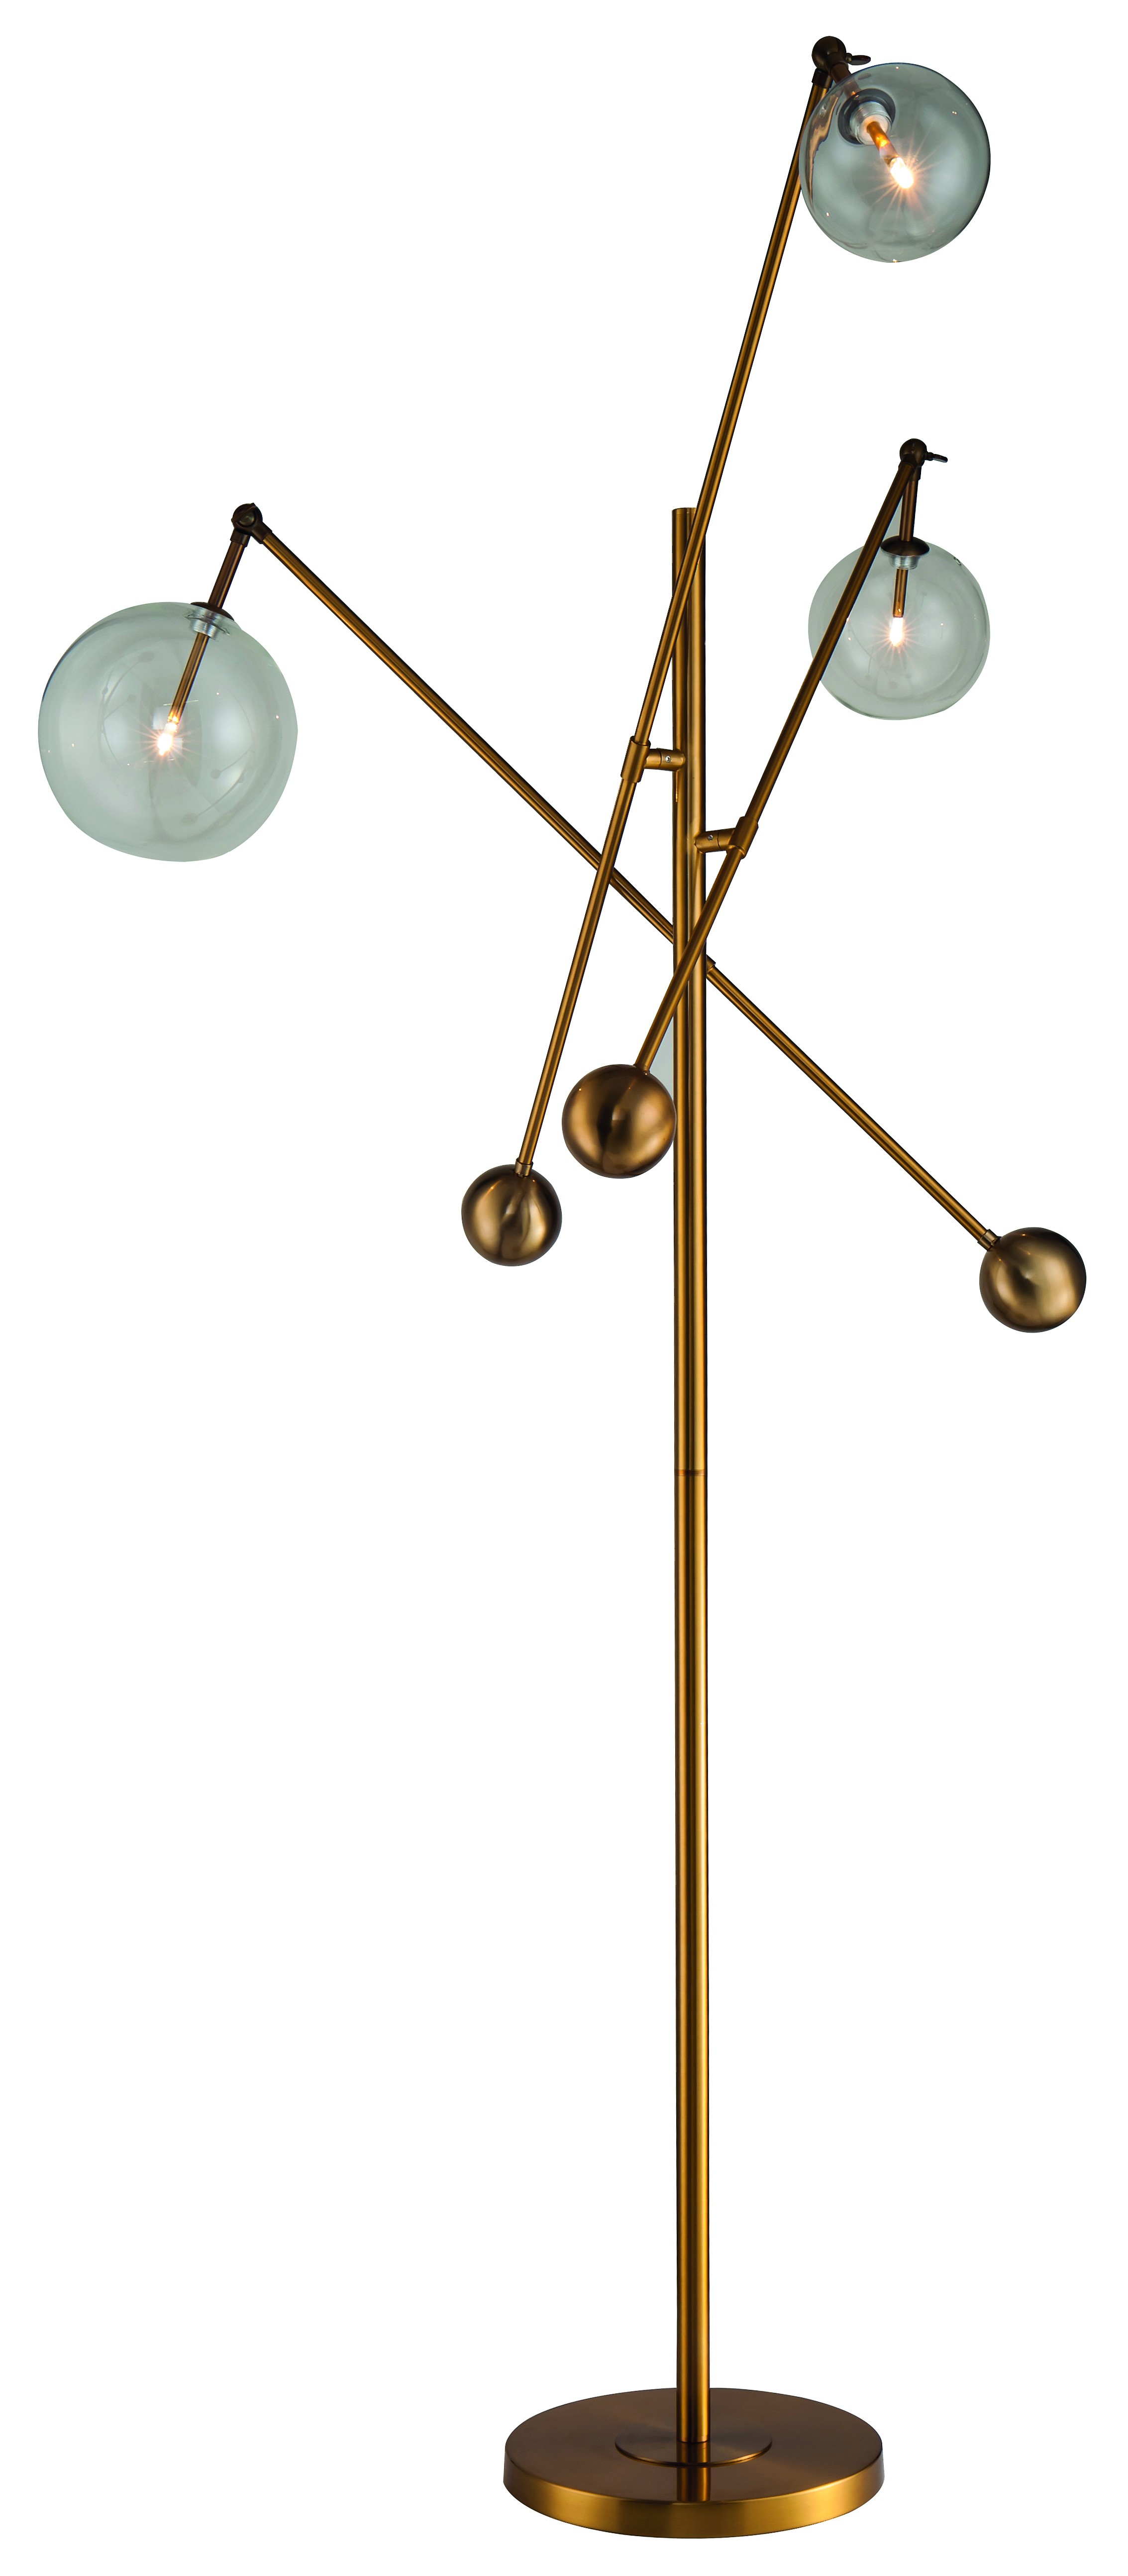 Estila Art-deco kovová stojací lampa Vidar se třemi polohovatelnými rukojeťmi zlatá 180cm